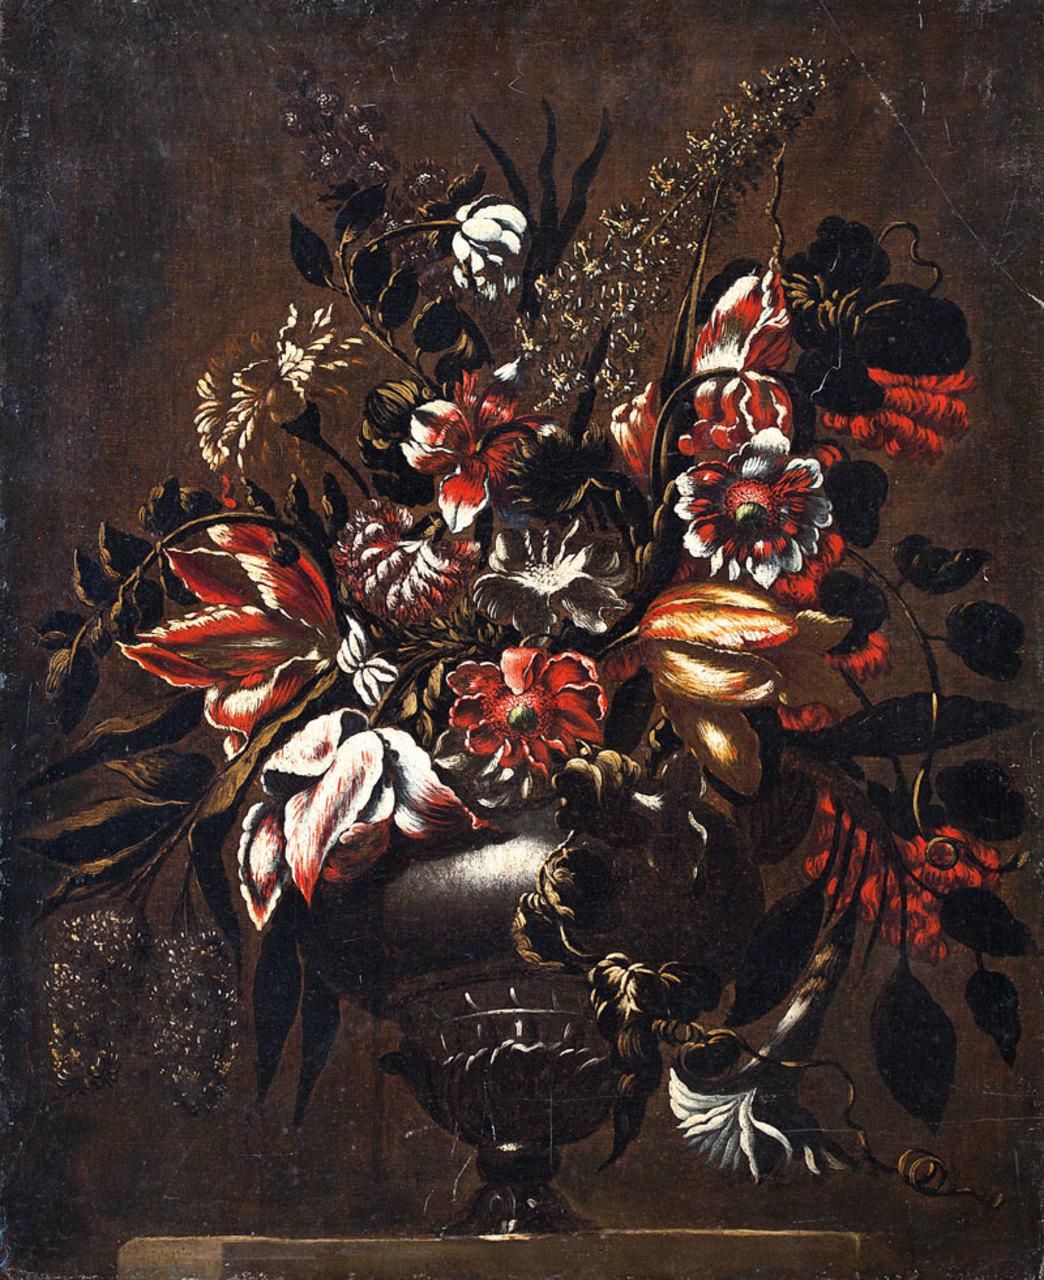 ESCUELA ESPAÑOLA, Fns. S. XVII Vase avec fleurs
Huile sur toile
75 x 62 cm.